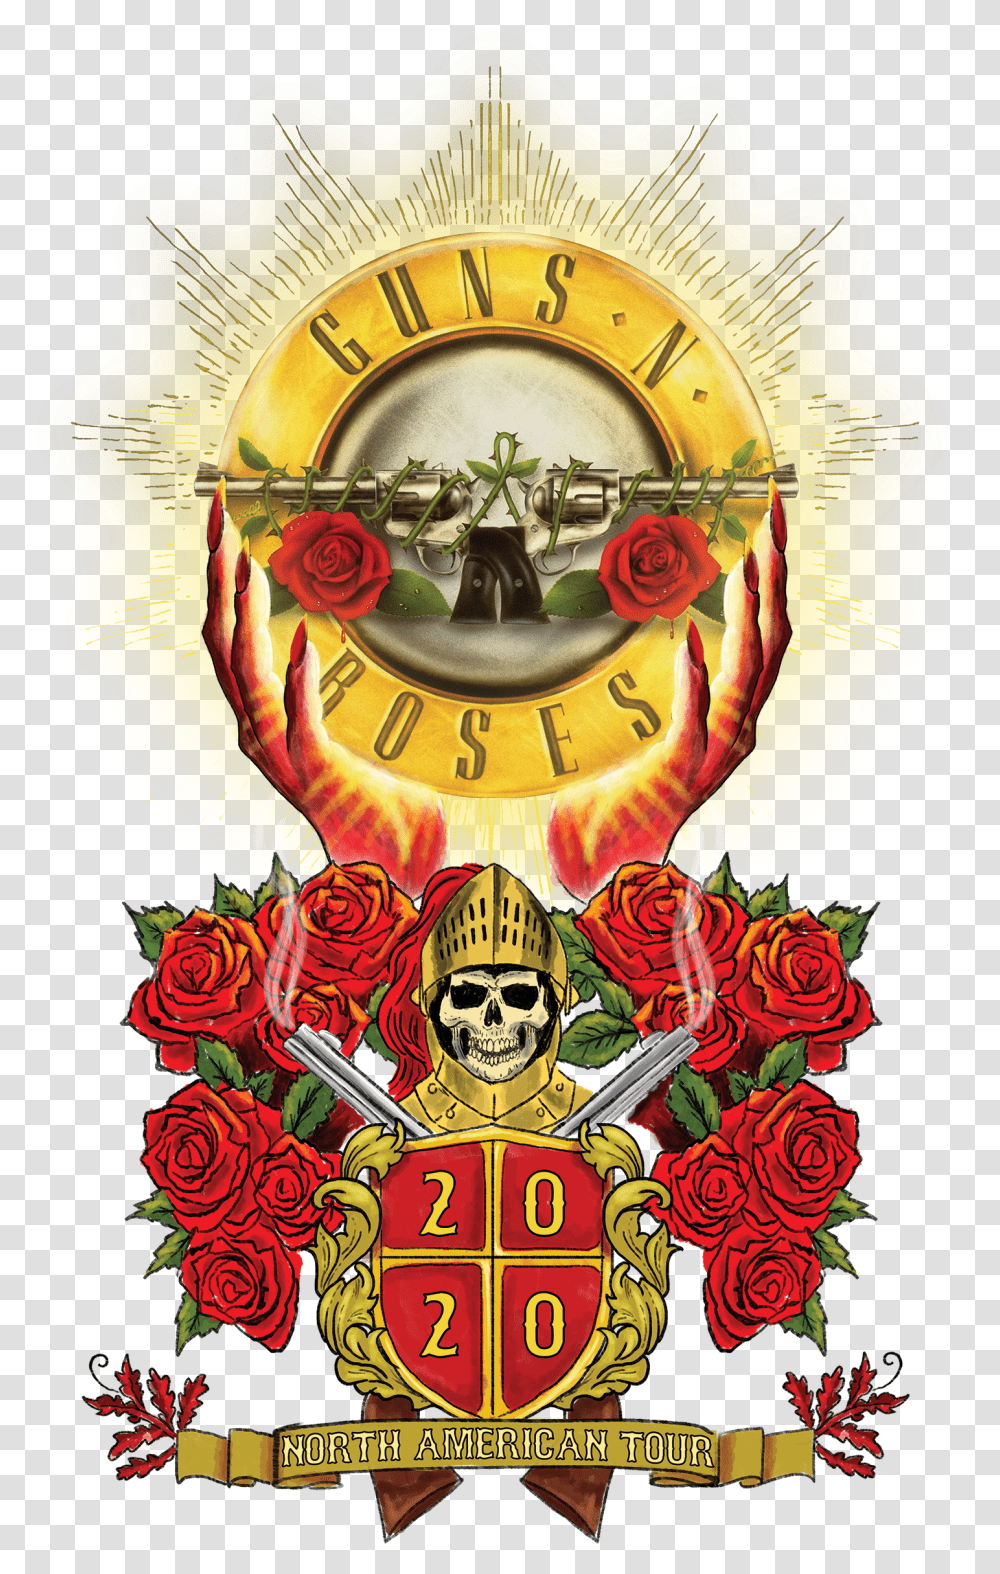 Guns N Roses North American Tour 2020 Transparent Png